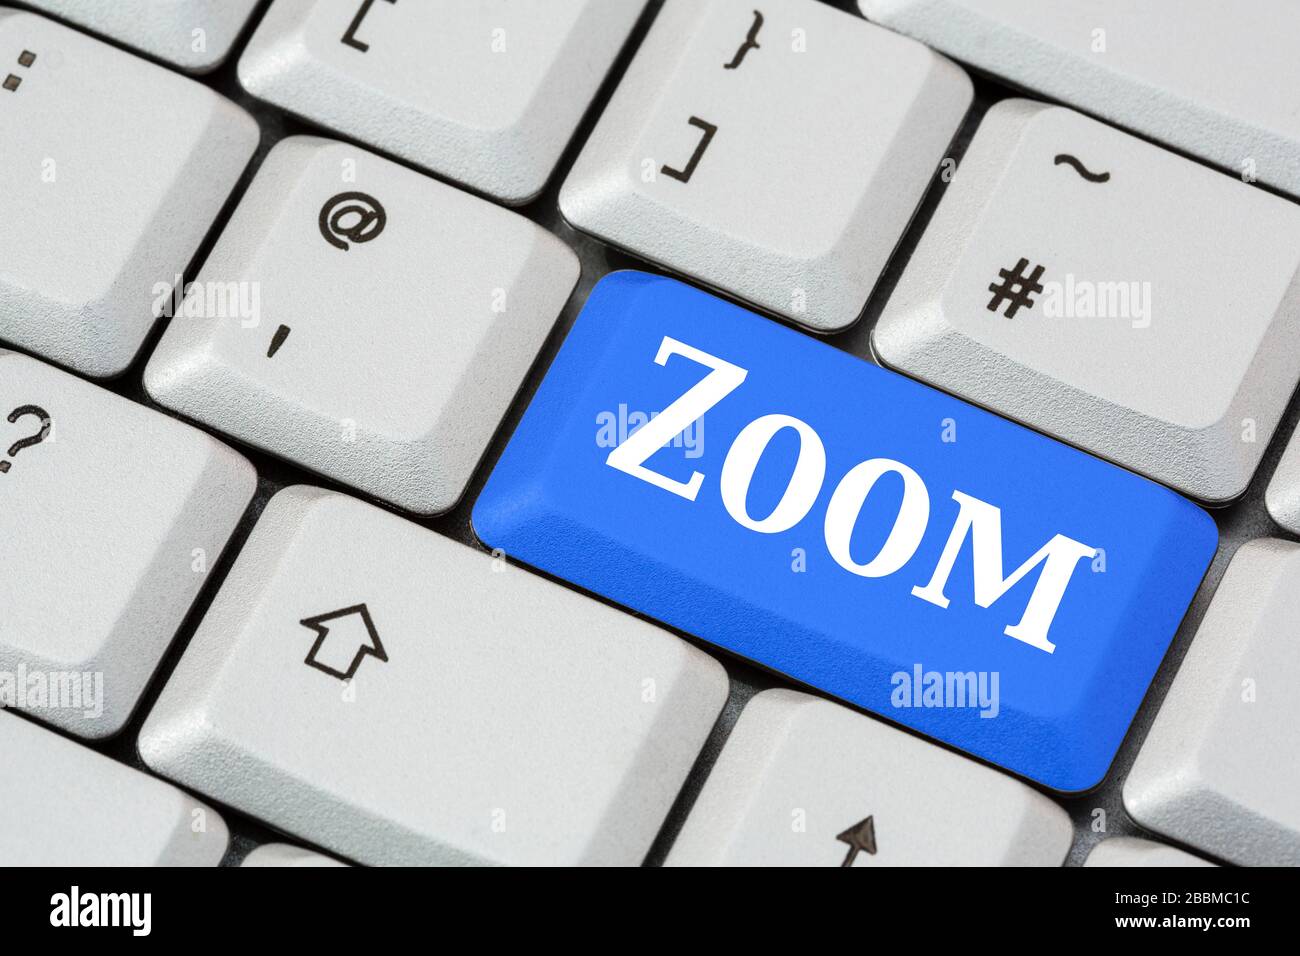 Un teclado con la función Zoom in en blanco en una tecla ENTER azul.  Aplicación Zoom para el concepto de videoconferencia. Inglaterra, Reino  Unido, Gran Bretaña Fotografía de stock - Alamy